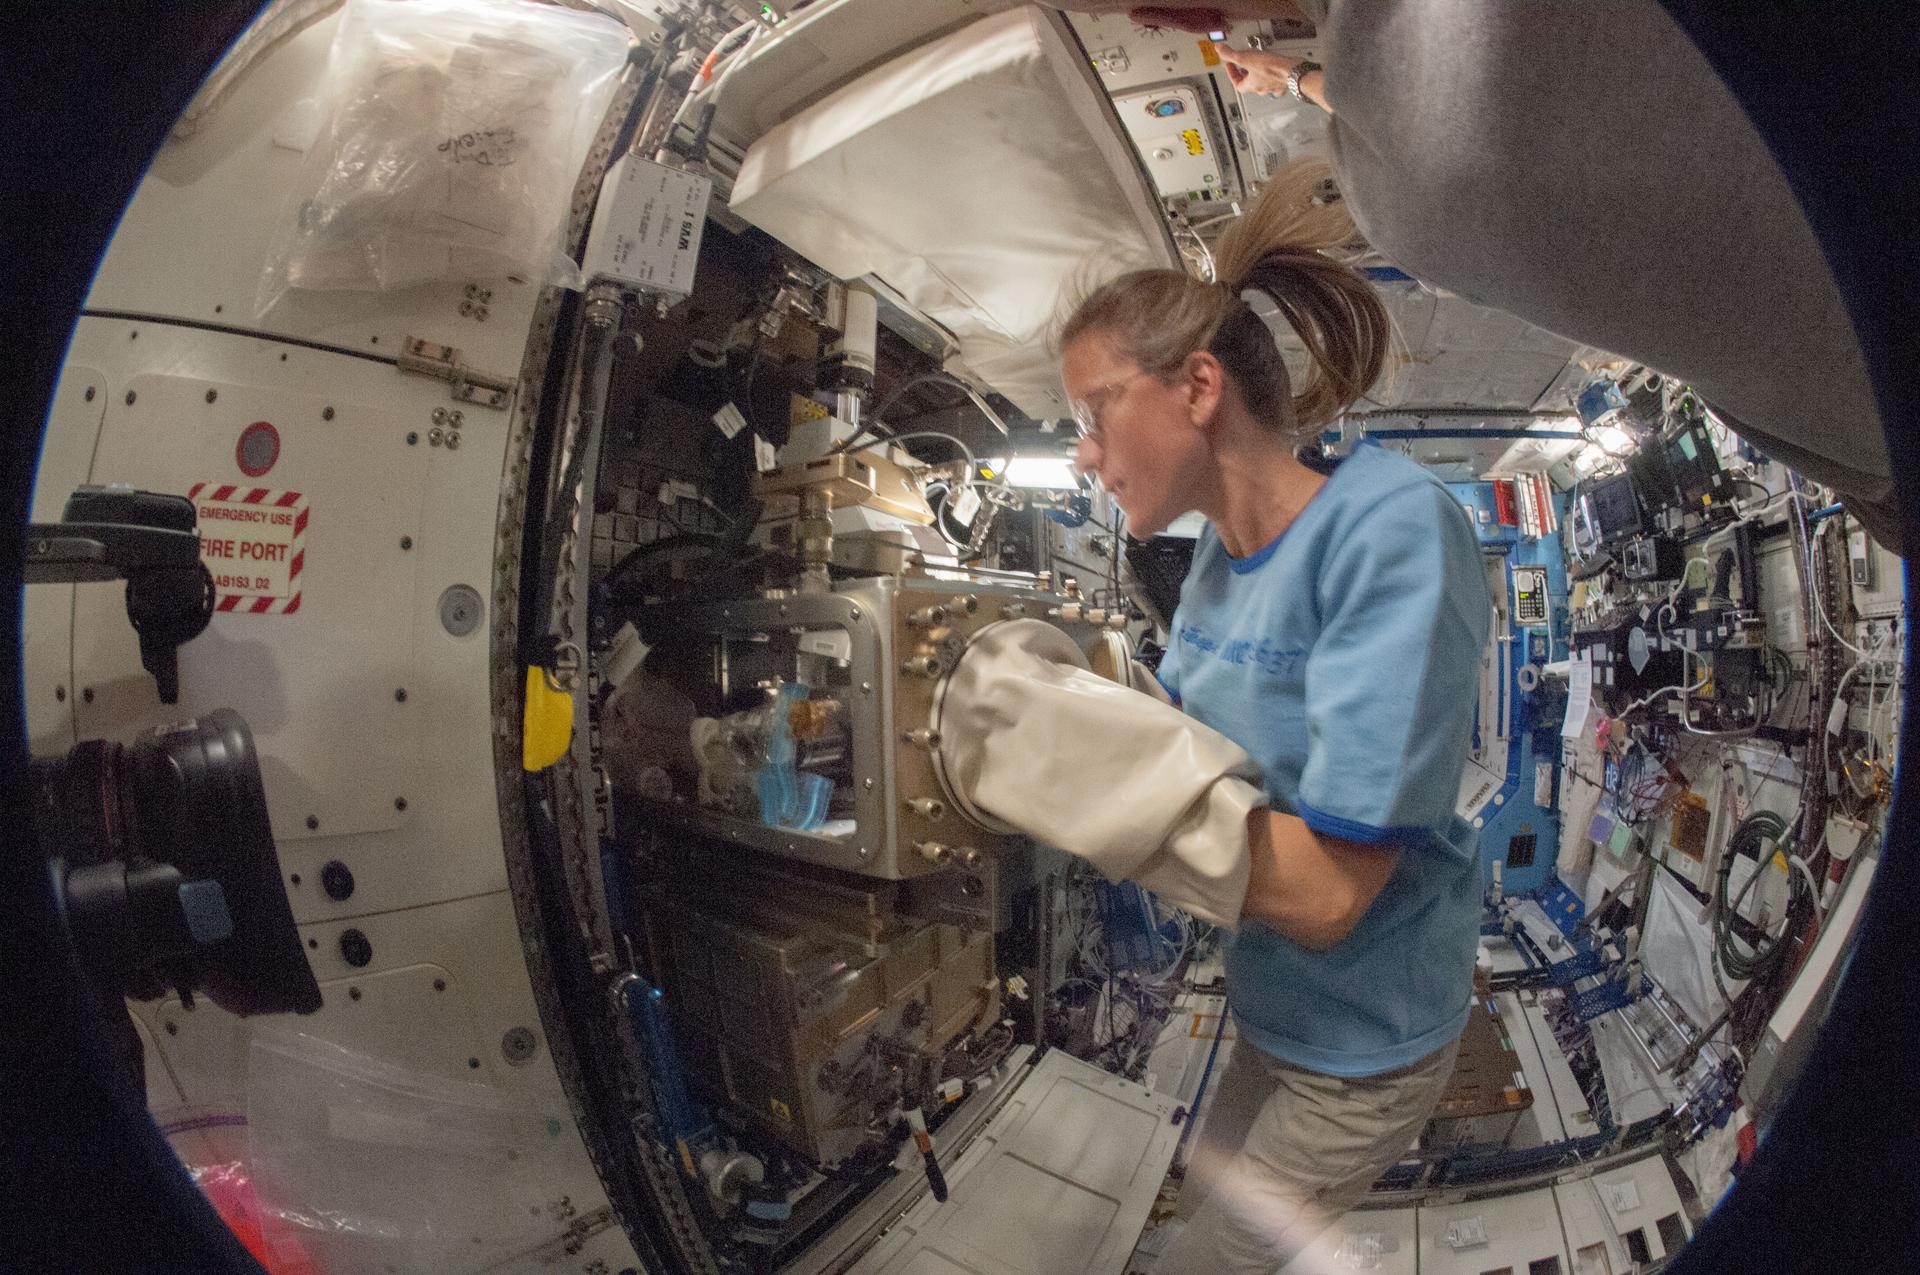 Astronautka Karen Nyberg przeprowadzająca badania w ramach poprzedniego eksperymentu, ACE-1 (Advanced Colloids Experiment) (Źródło: NASA)